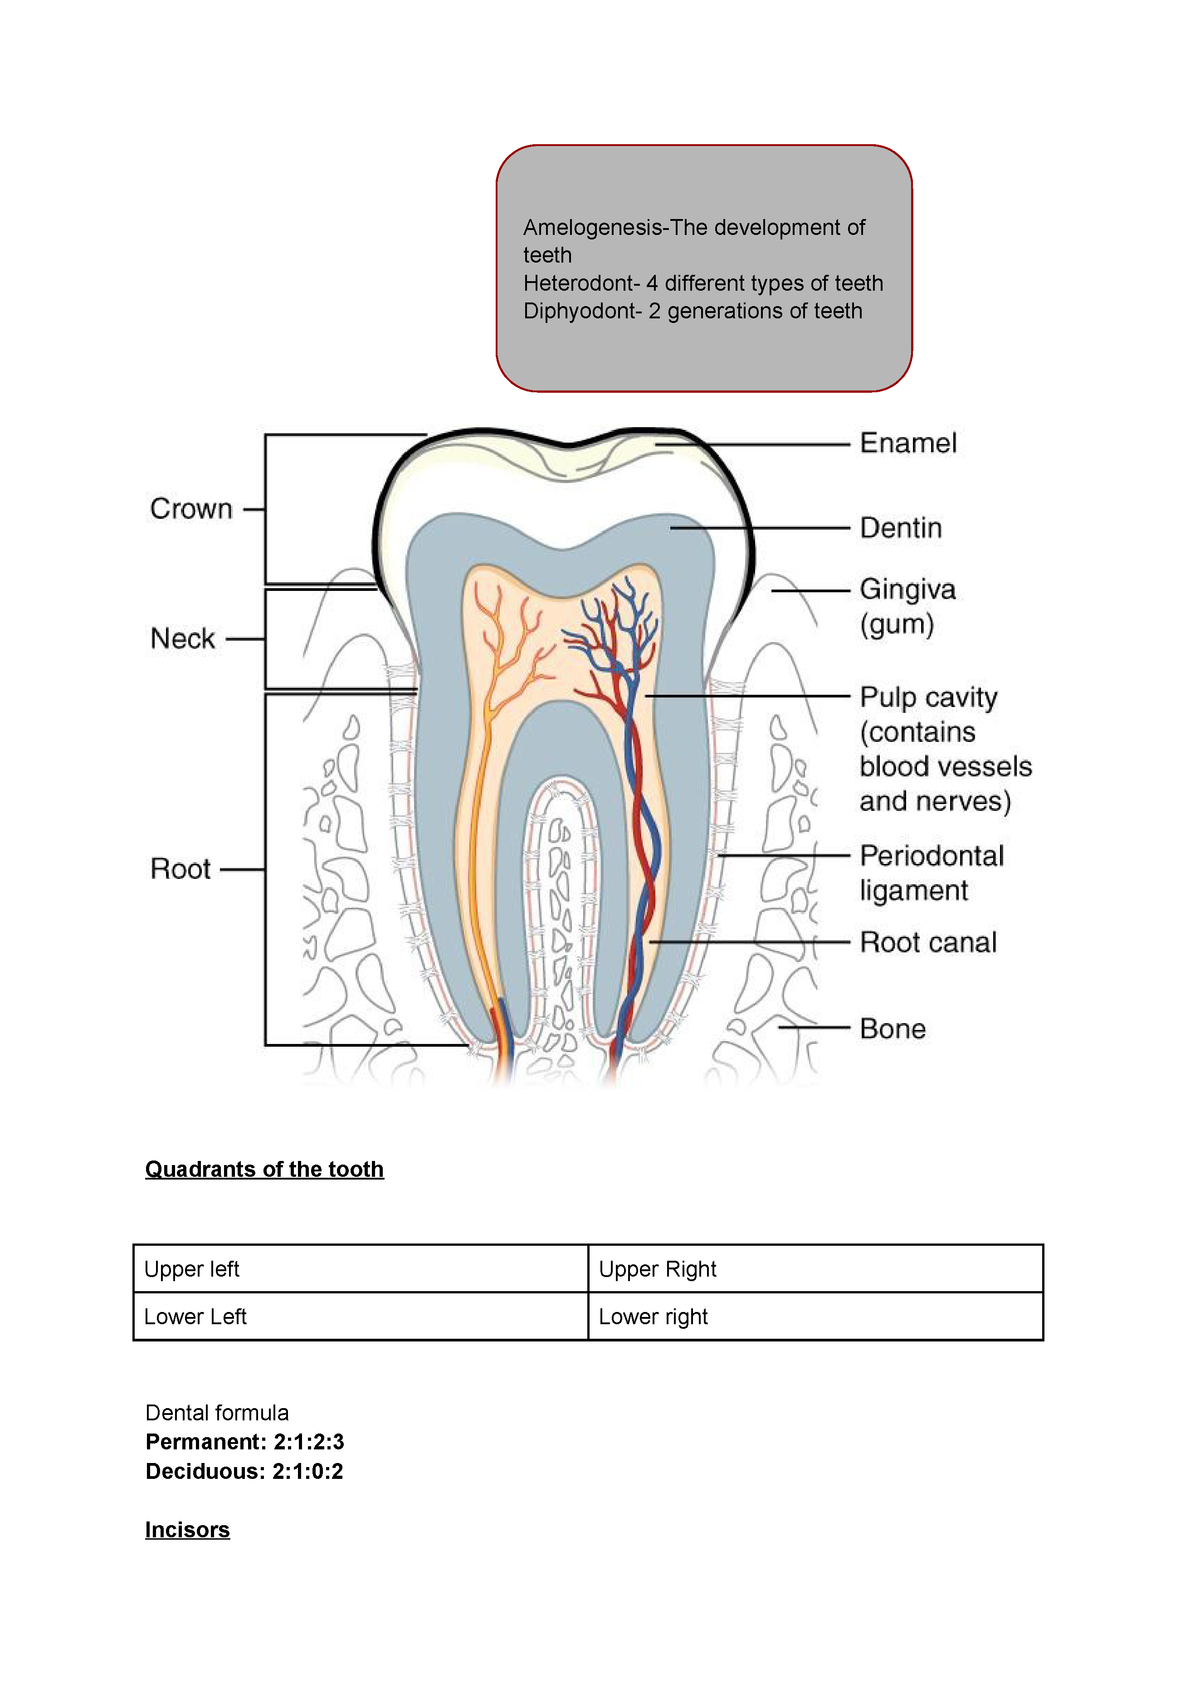 Anatomy Types Of Teeth Diagram - Aflam-Neeeak